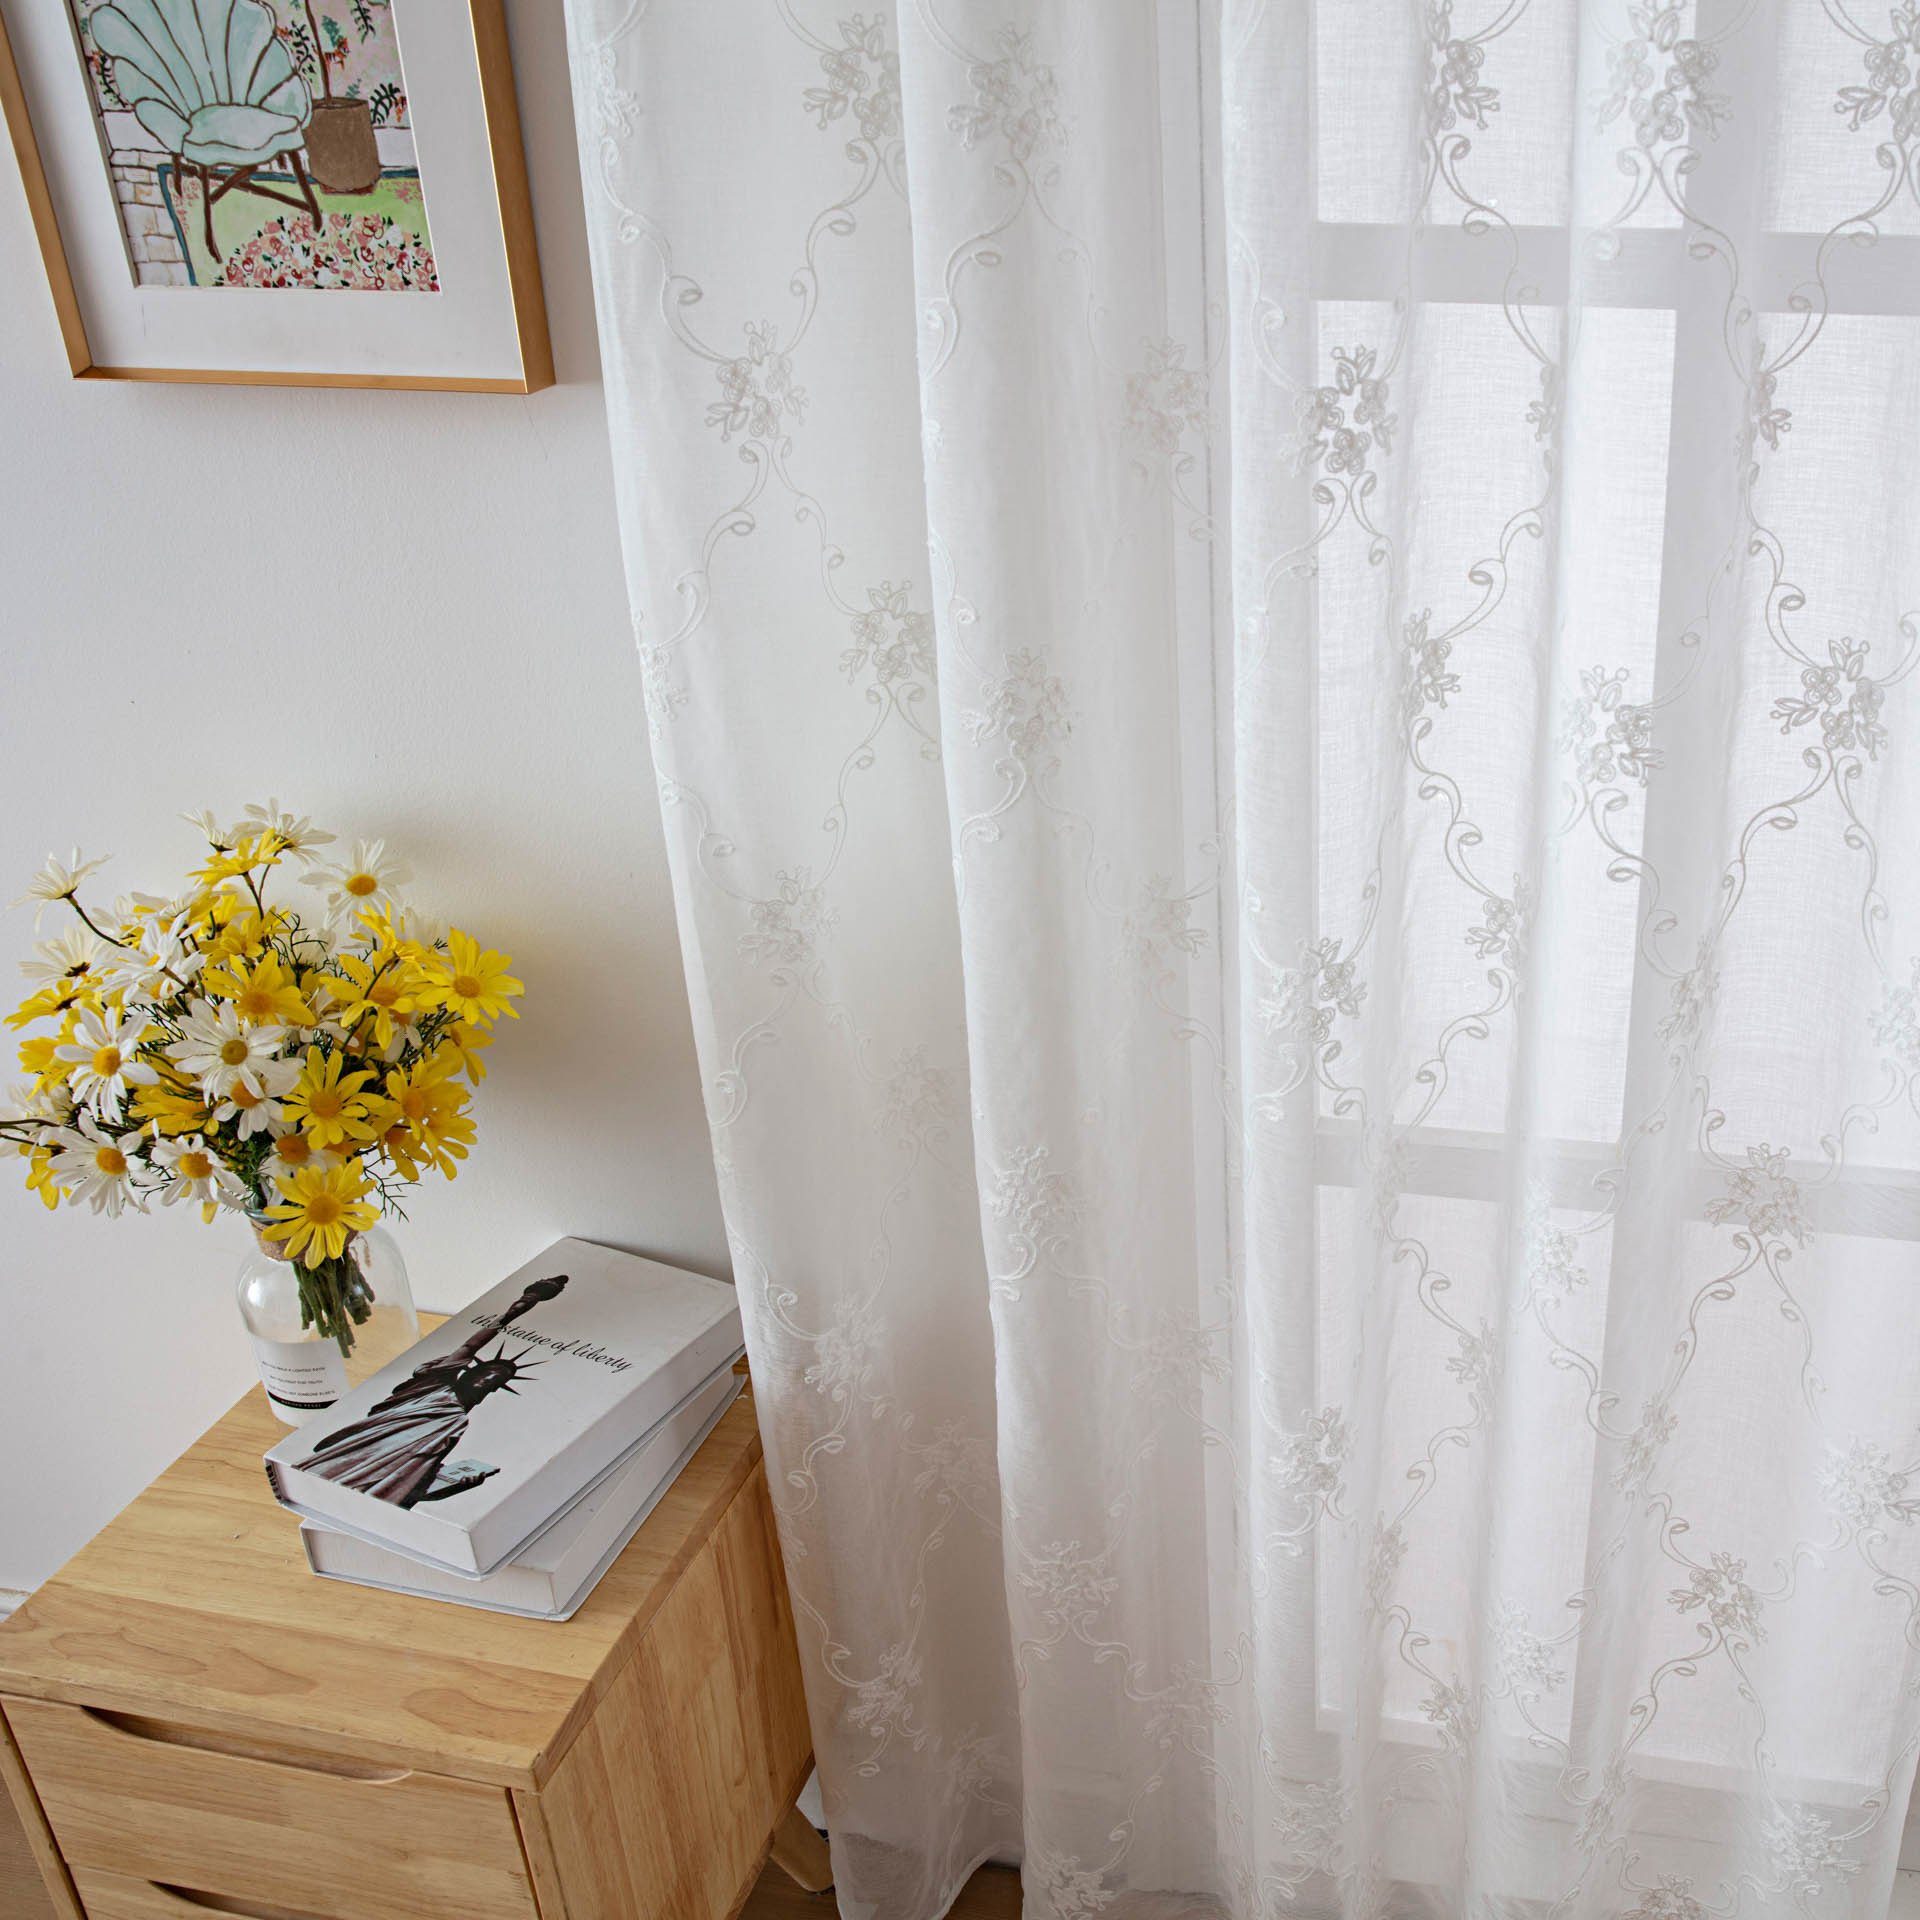 Vorhang mit Gardinenschals, Stickerei, Ösen, Blumen Voile aus GelldG Gardine Vorhänge